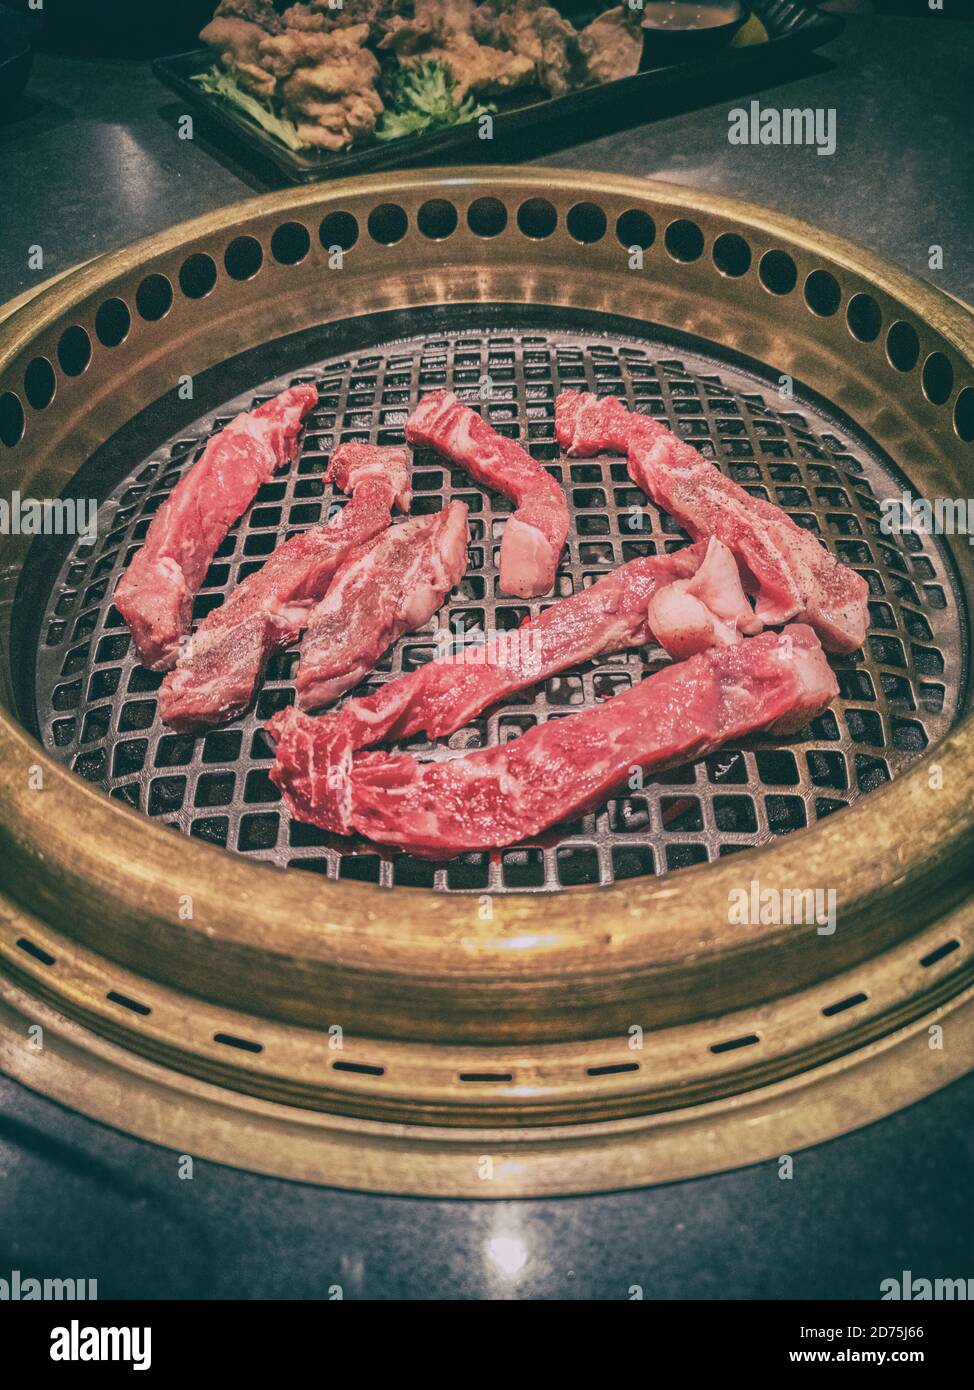 ressource Tilskud Bule Japanisches BBQ Restaurant Barbecue Grill Draufsicht auf den Tisch Grillen  Yakiniku von rohem Steak Fleisch Premium-Schnitte. Japanische Kultur Essen  Erleben Sie Kochen Stockfotografie - Alamy